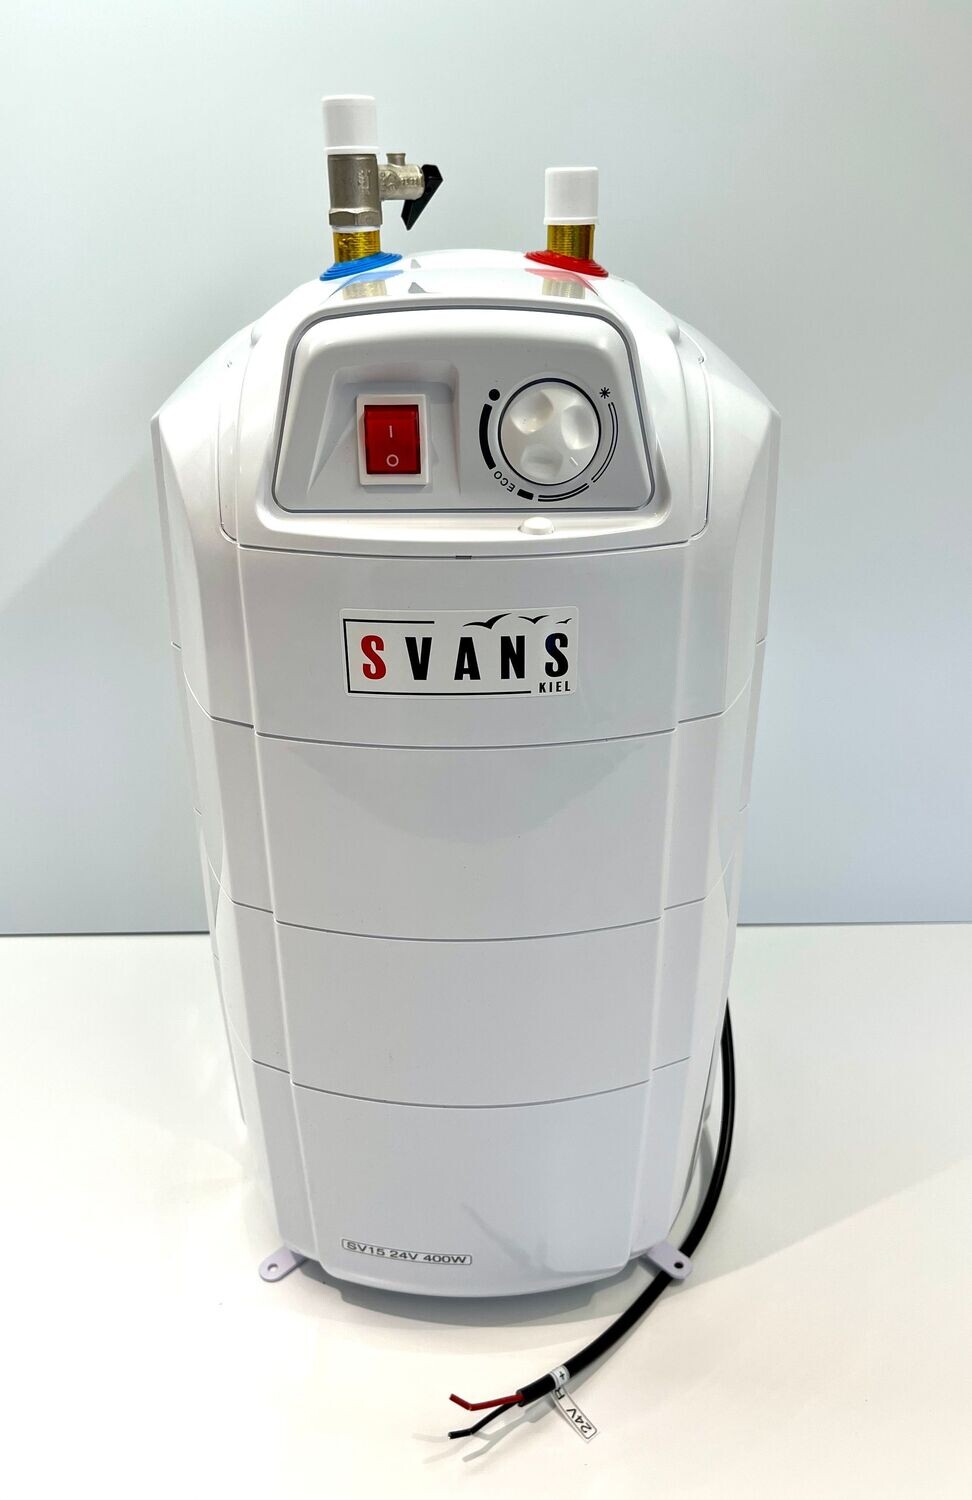 Boiler SV15 48V 800W (15 Liter)